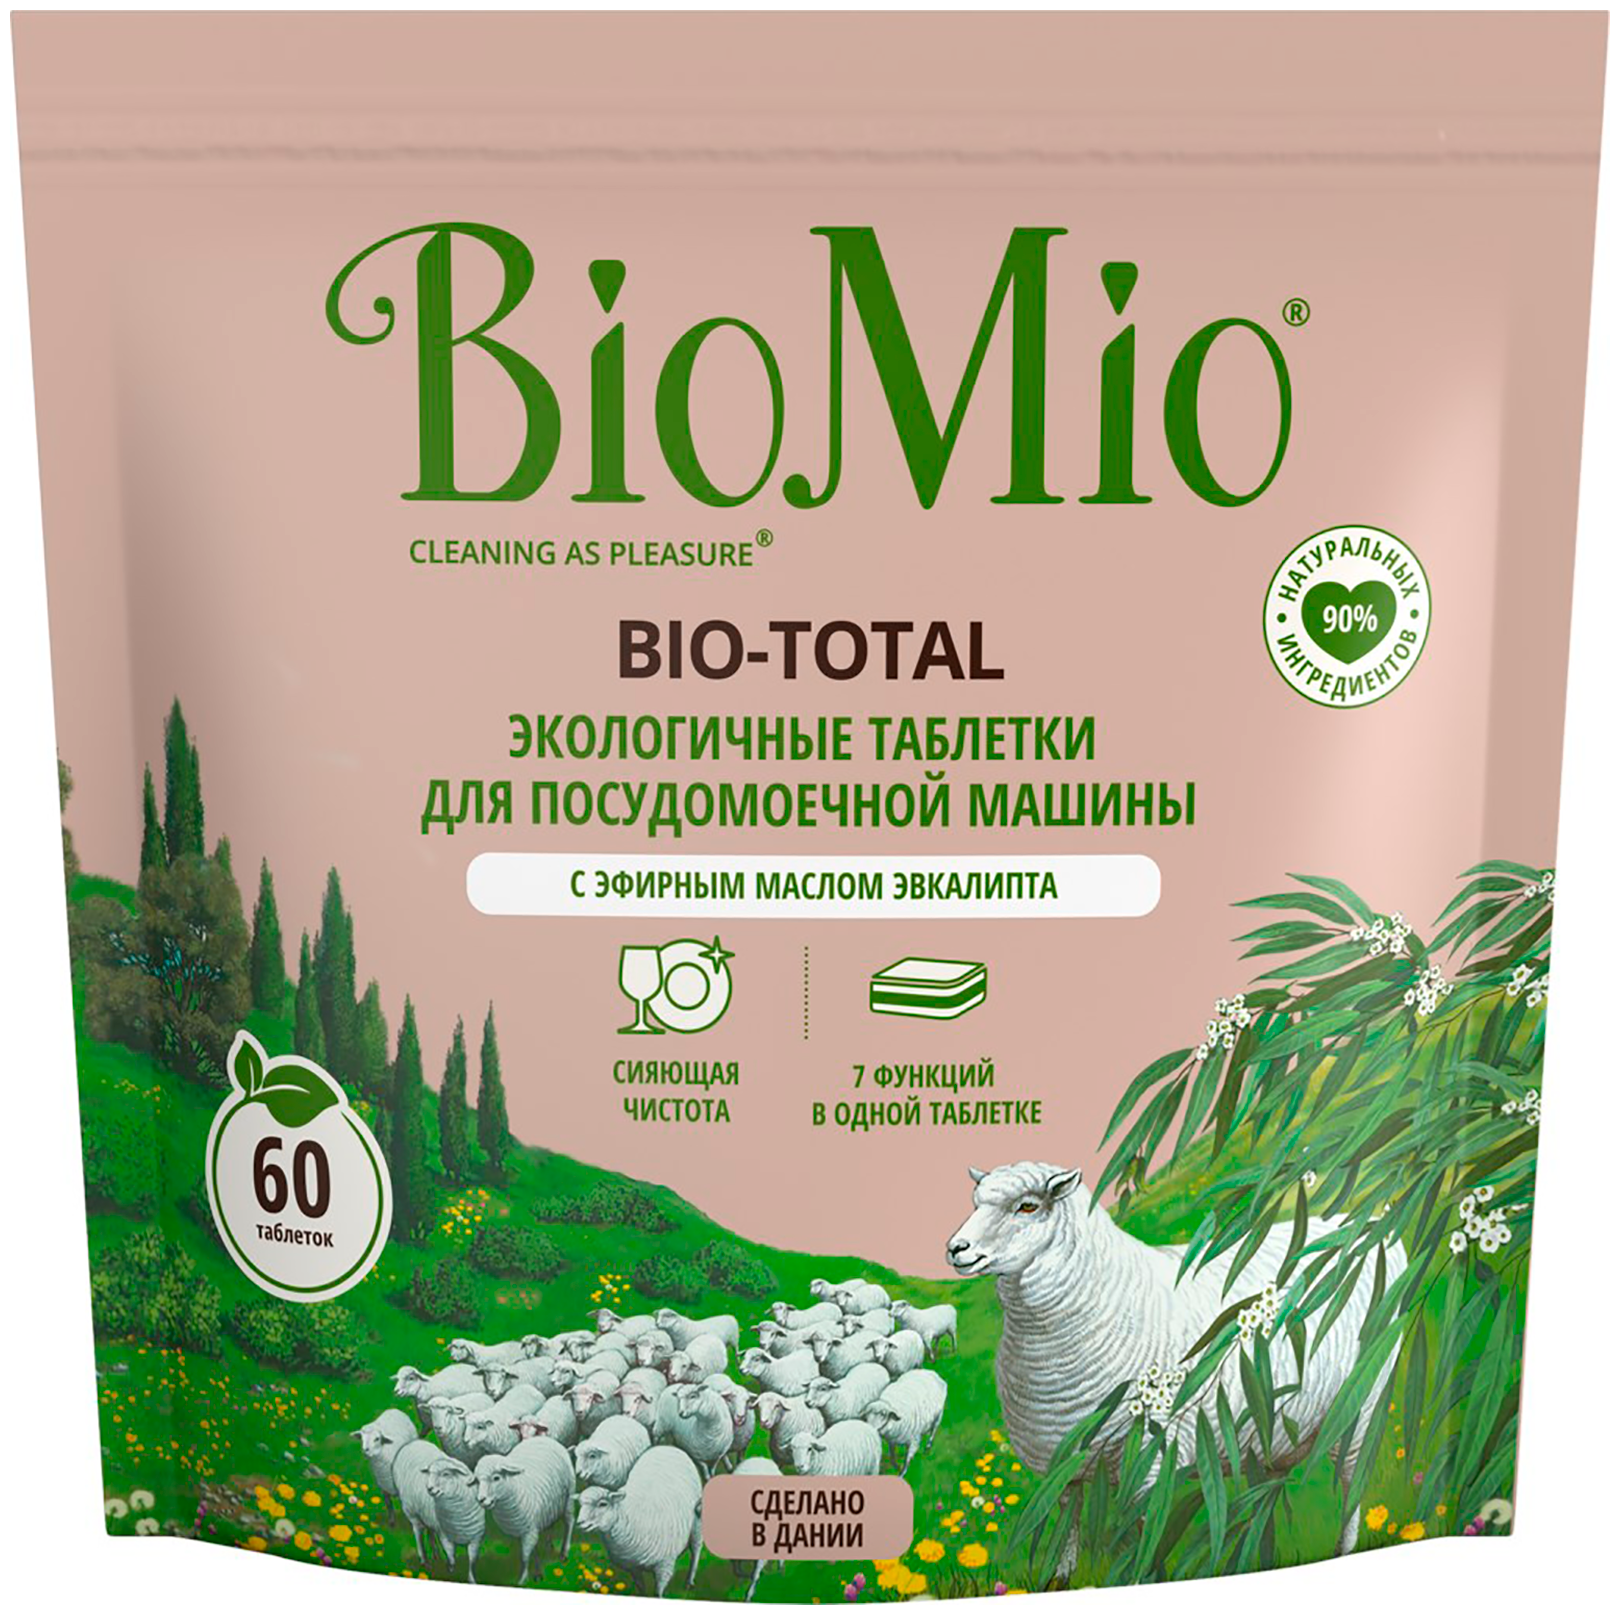 Таблетки для посудомоечной машины BioMio BIO-TOTAL 7 в 1 эфирное масло эвкалипта 60 шт